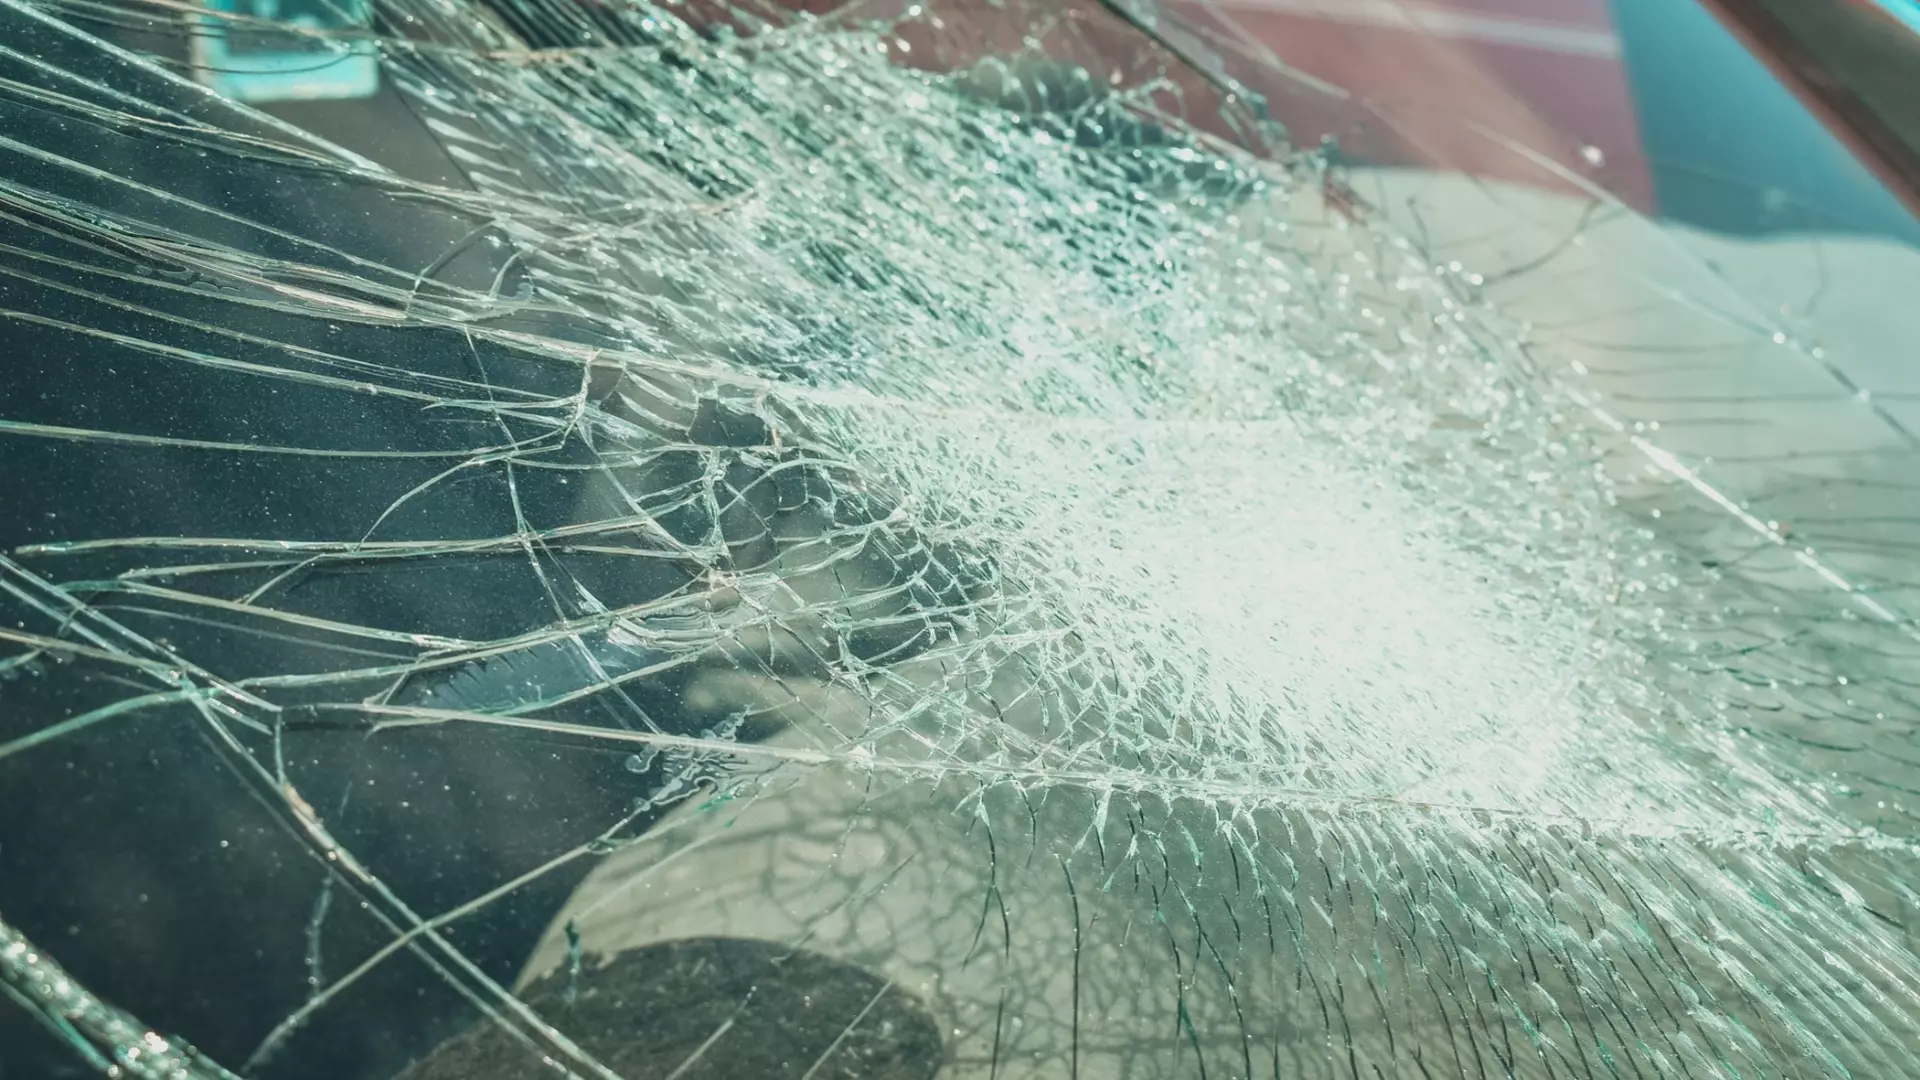 Недекват побил стекла автомобилей в Нижнем Новгороде